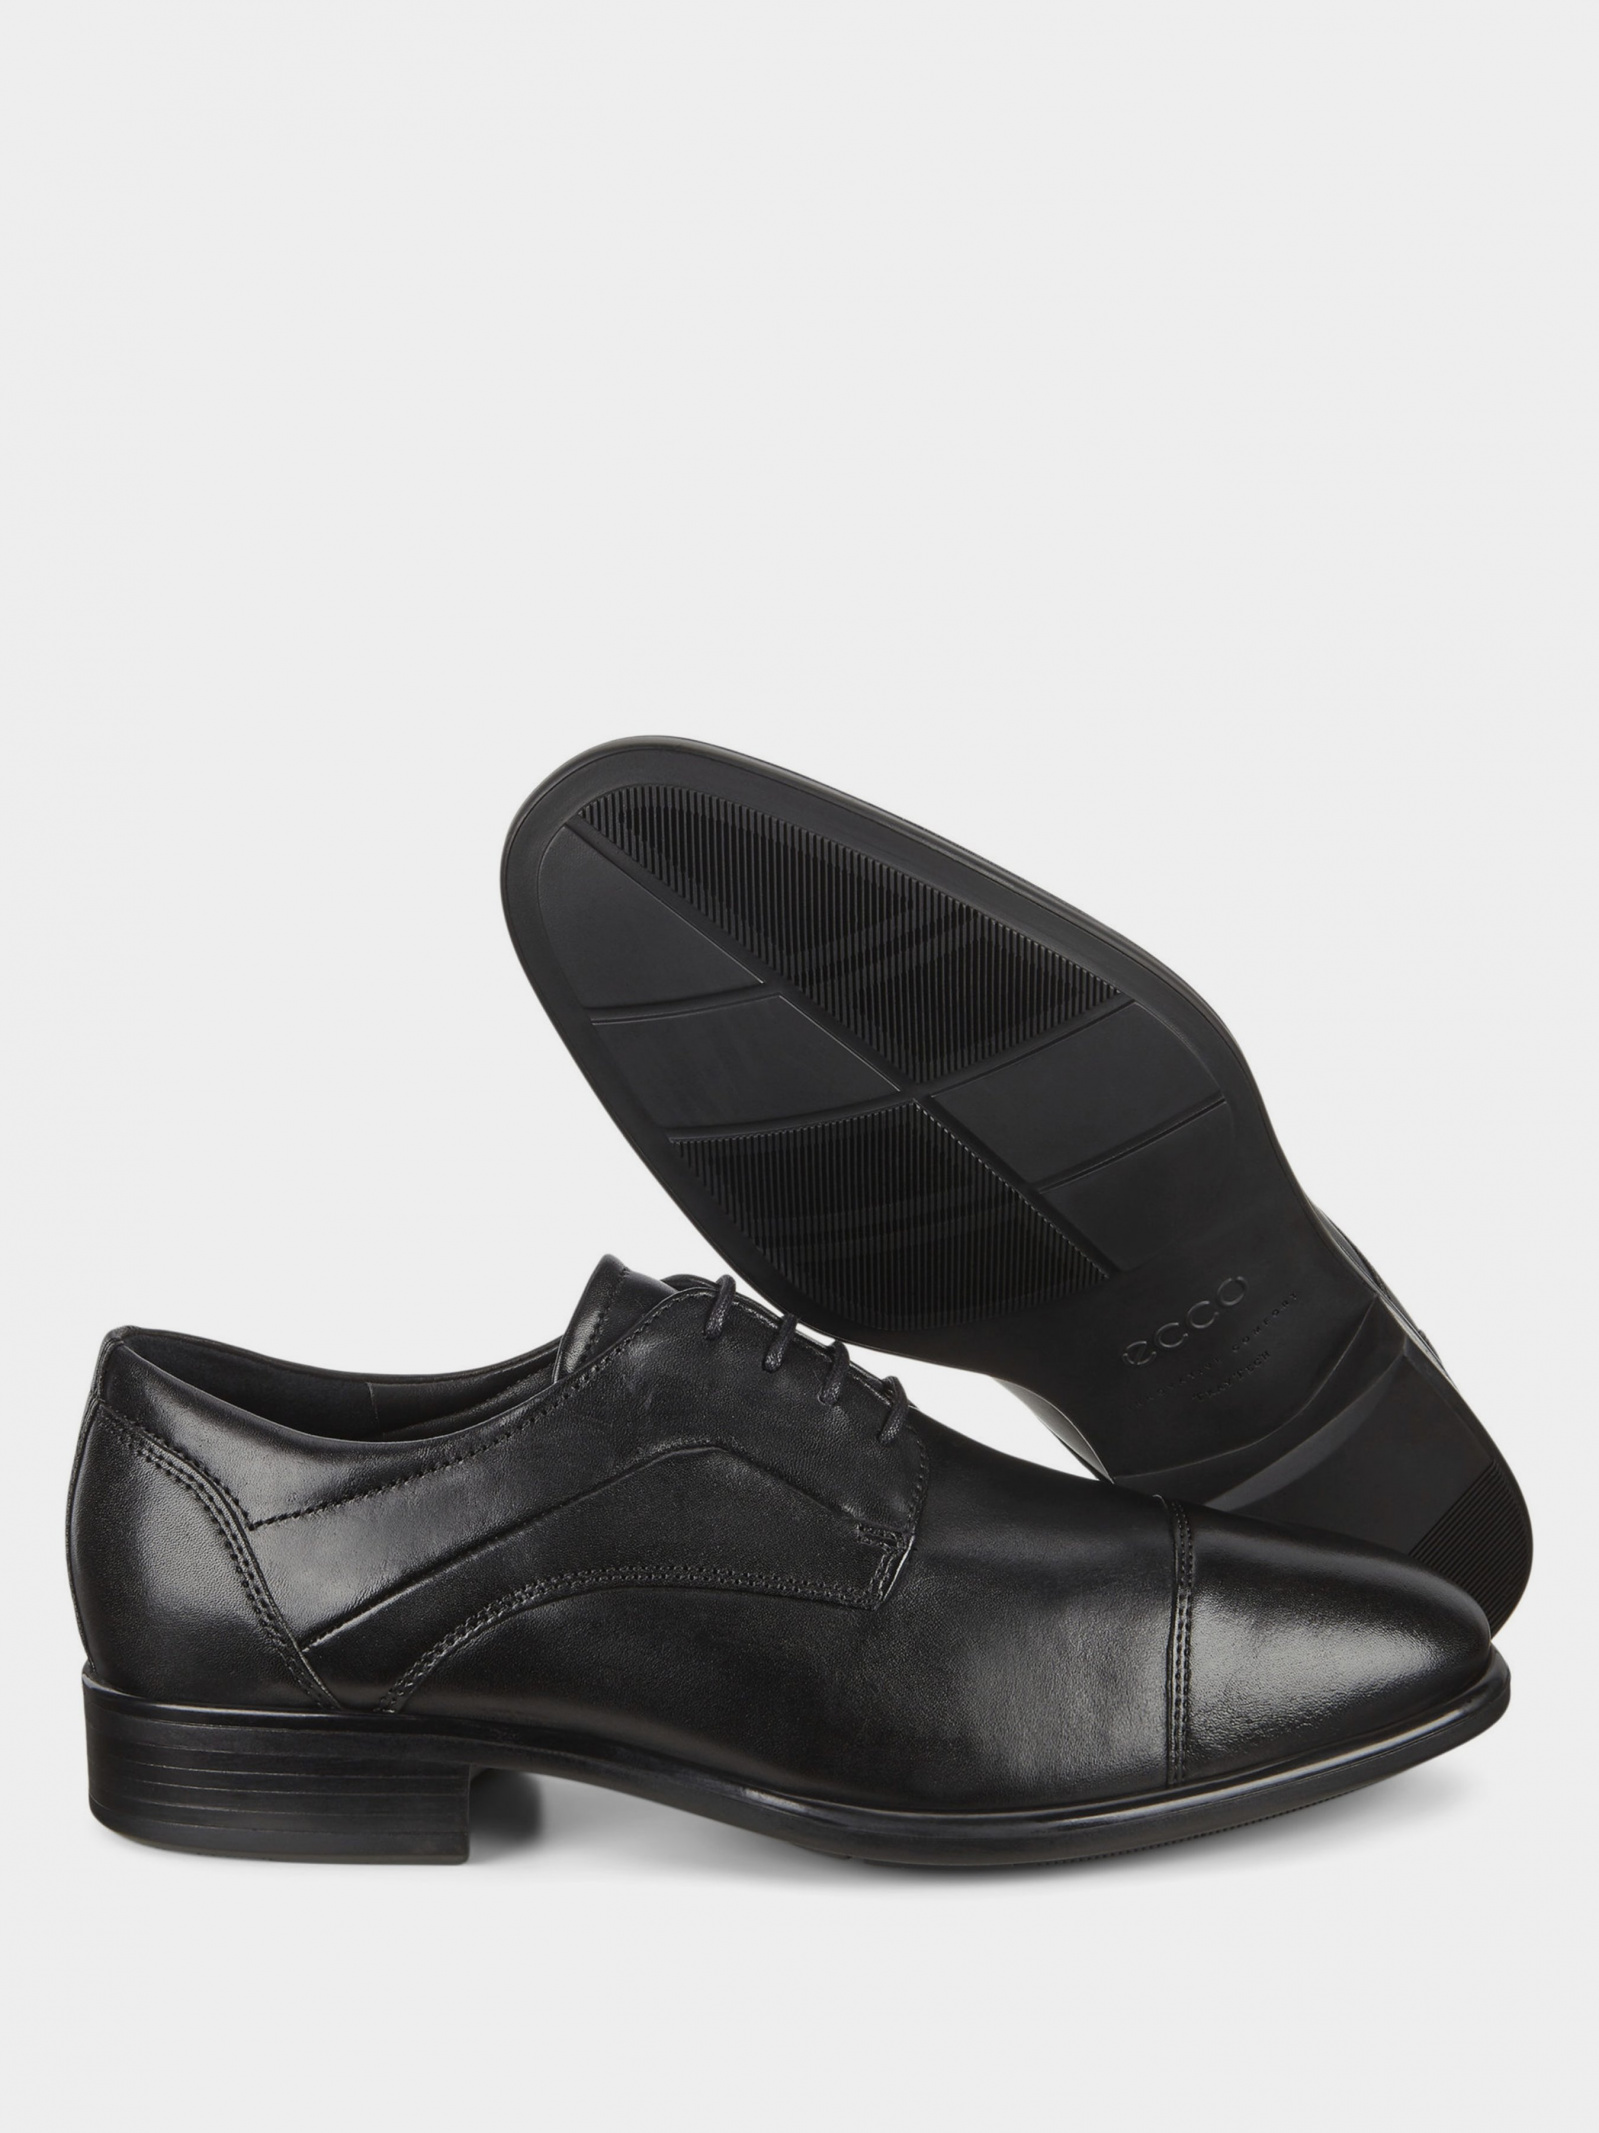 Туфлі ECCO CITYTRAY 51270401001 для чоловіків, колір: Чорний - купити в ...